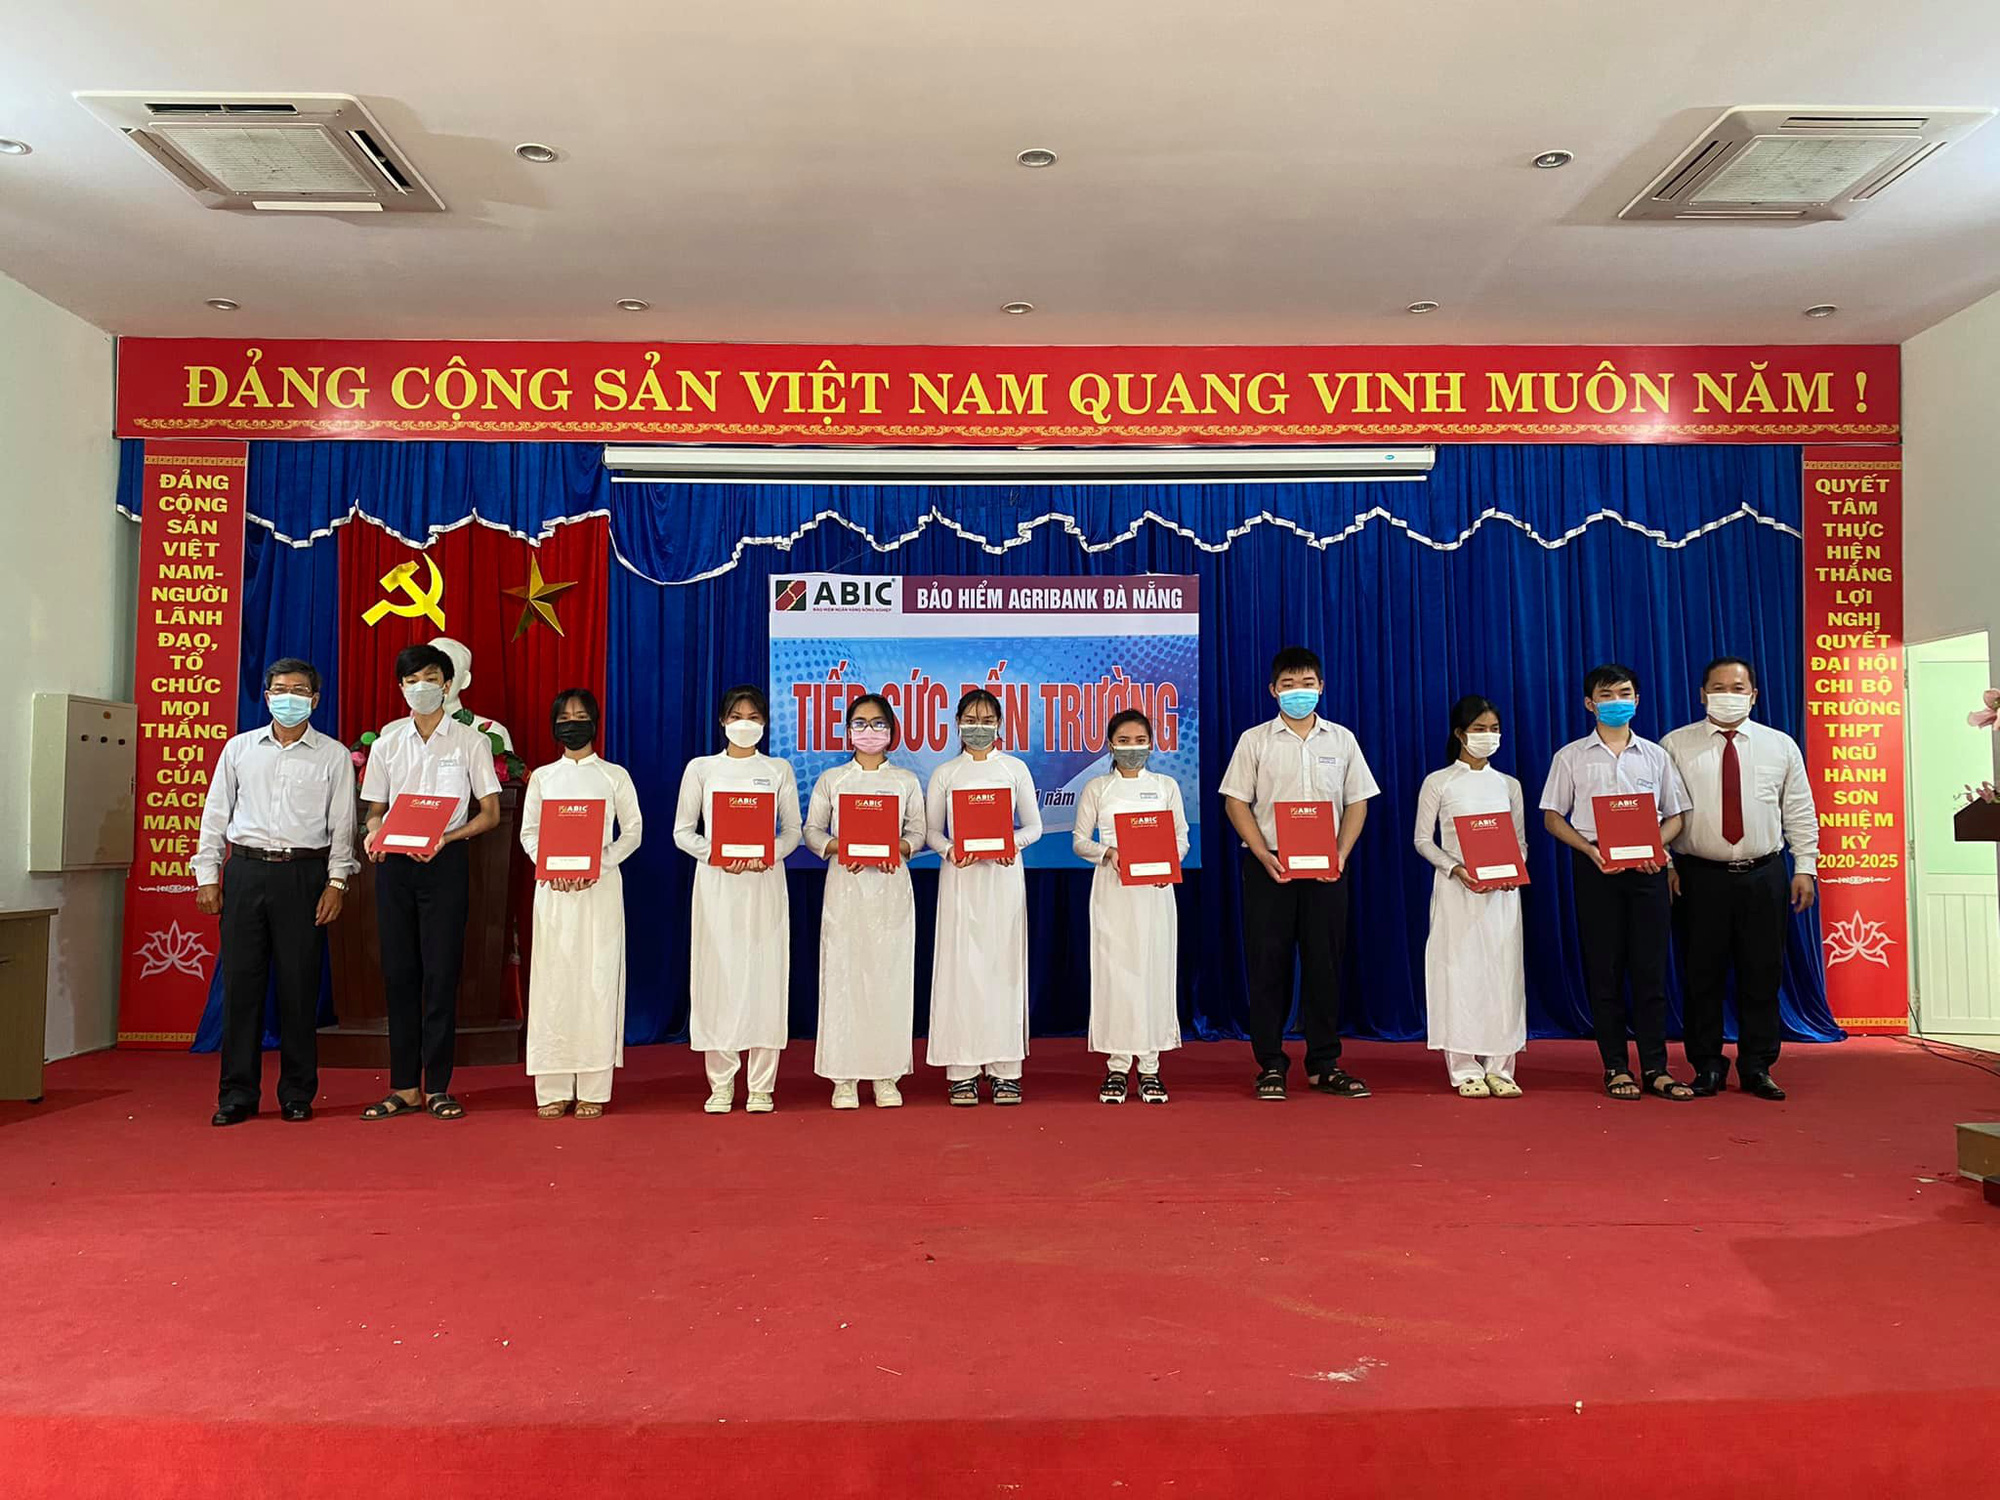 Bảo hiểm Agribank Đà Nẵng vượt “bão” Covid-19 đạt kết quả ấn tượng - Ảnh 4.